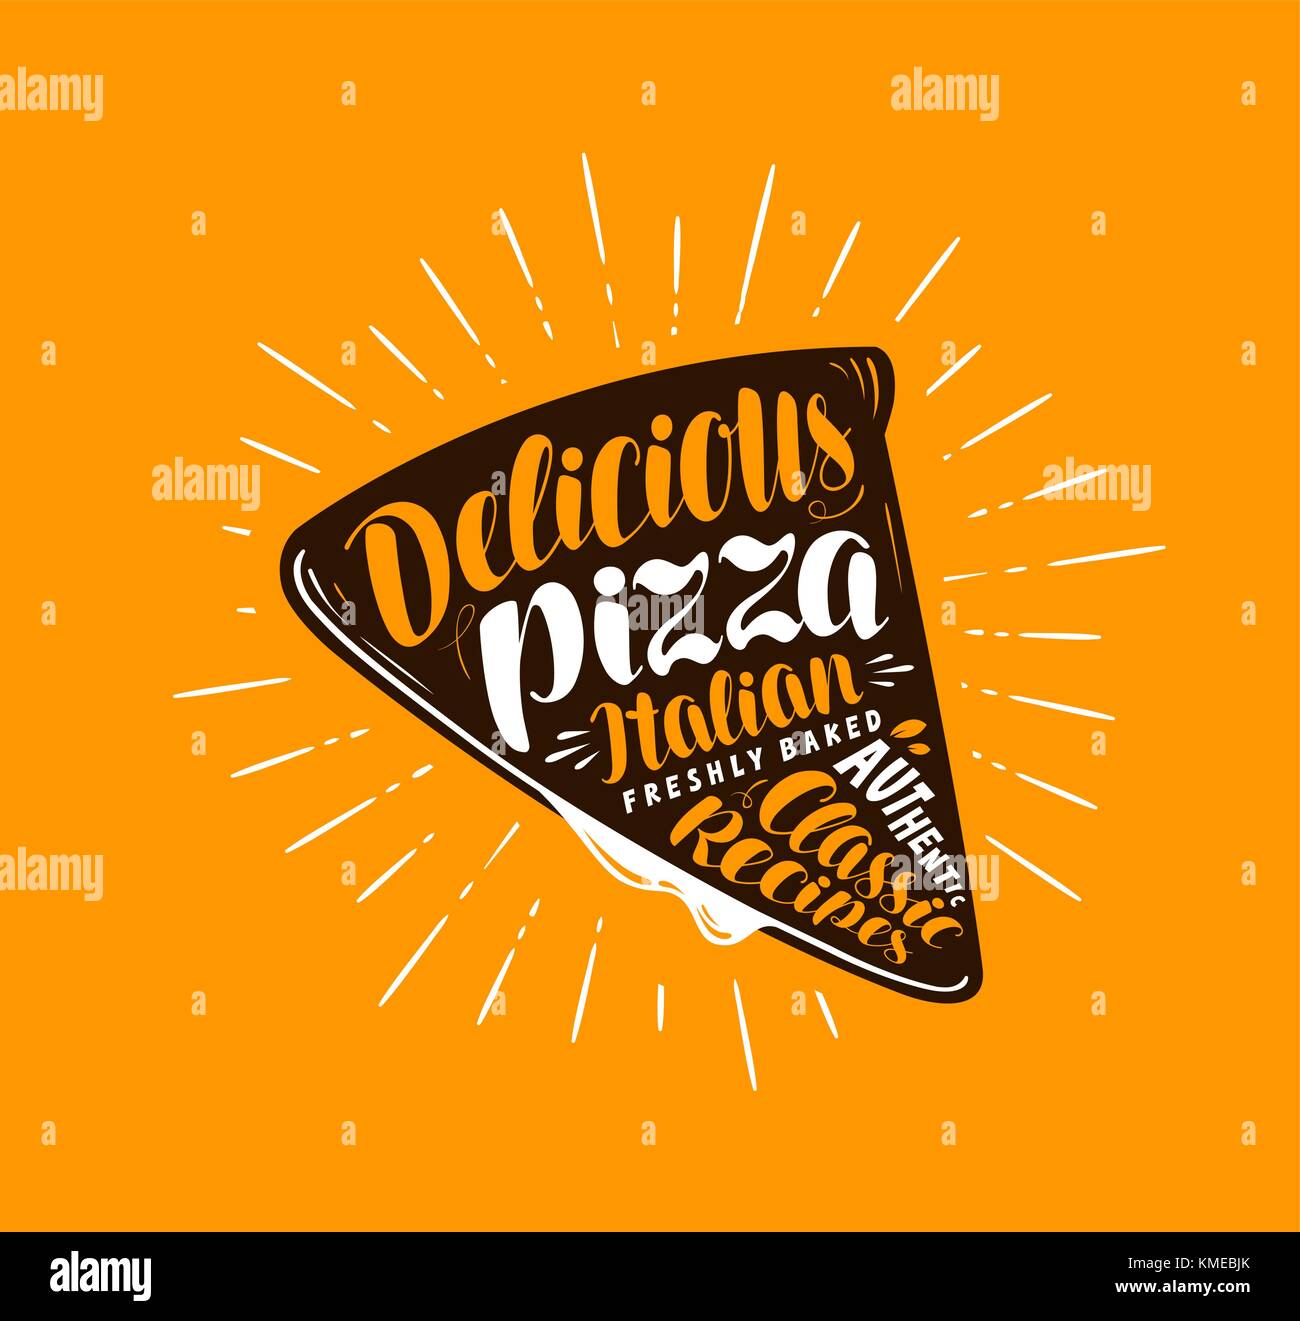 Pizzascheibe. Element des Menürestaurants oder der Pizzeria. Handgeschriebene Schrift, Kalligrafie Vektor-Illustration Stock Vektor